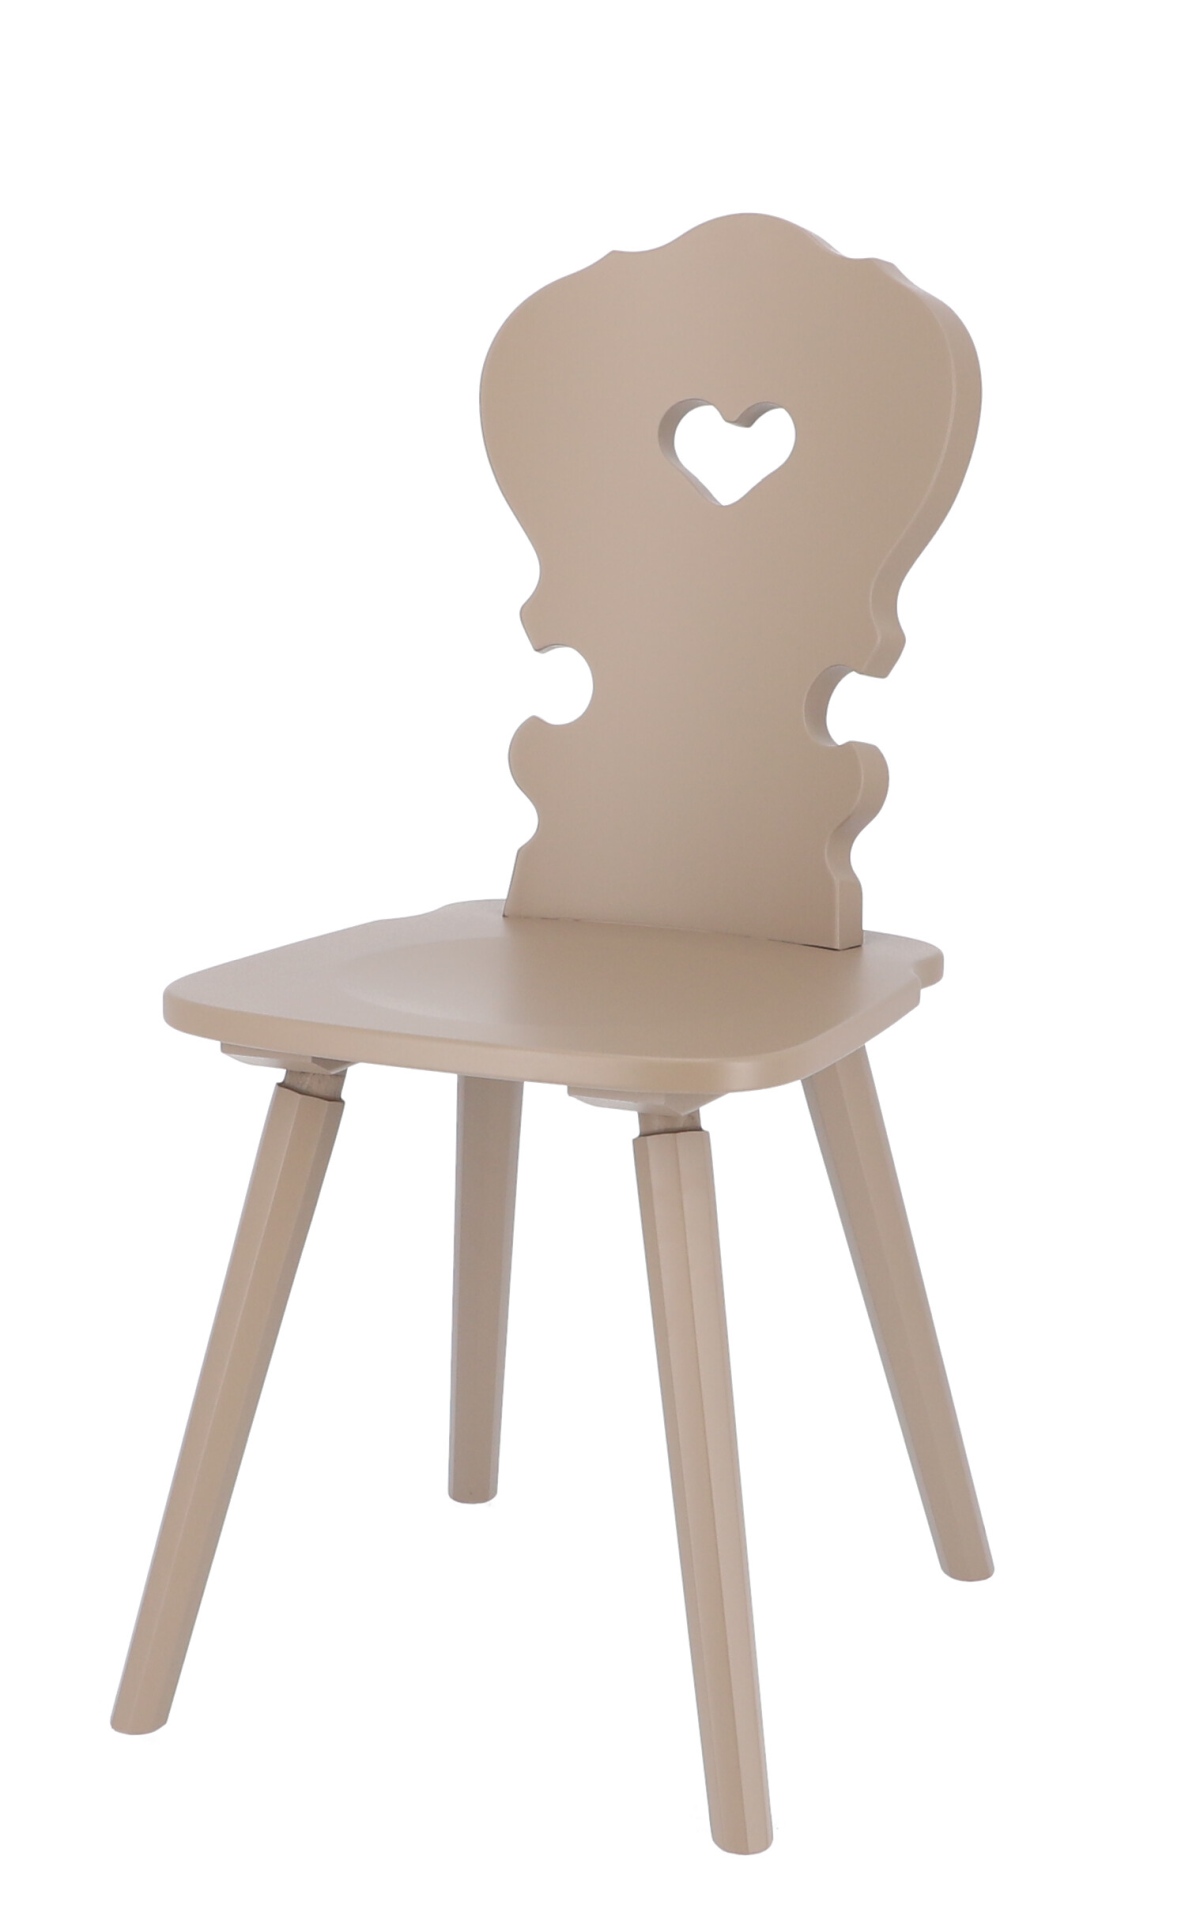 Der Stuhl Vienna ist ein absoluter Klassiker. Gefertigt wurde er aus Buchenholz und ist ein Produkt der Marke Jan Kurtz. Der Stuhl besitzt eine Taupe Farbe.